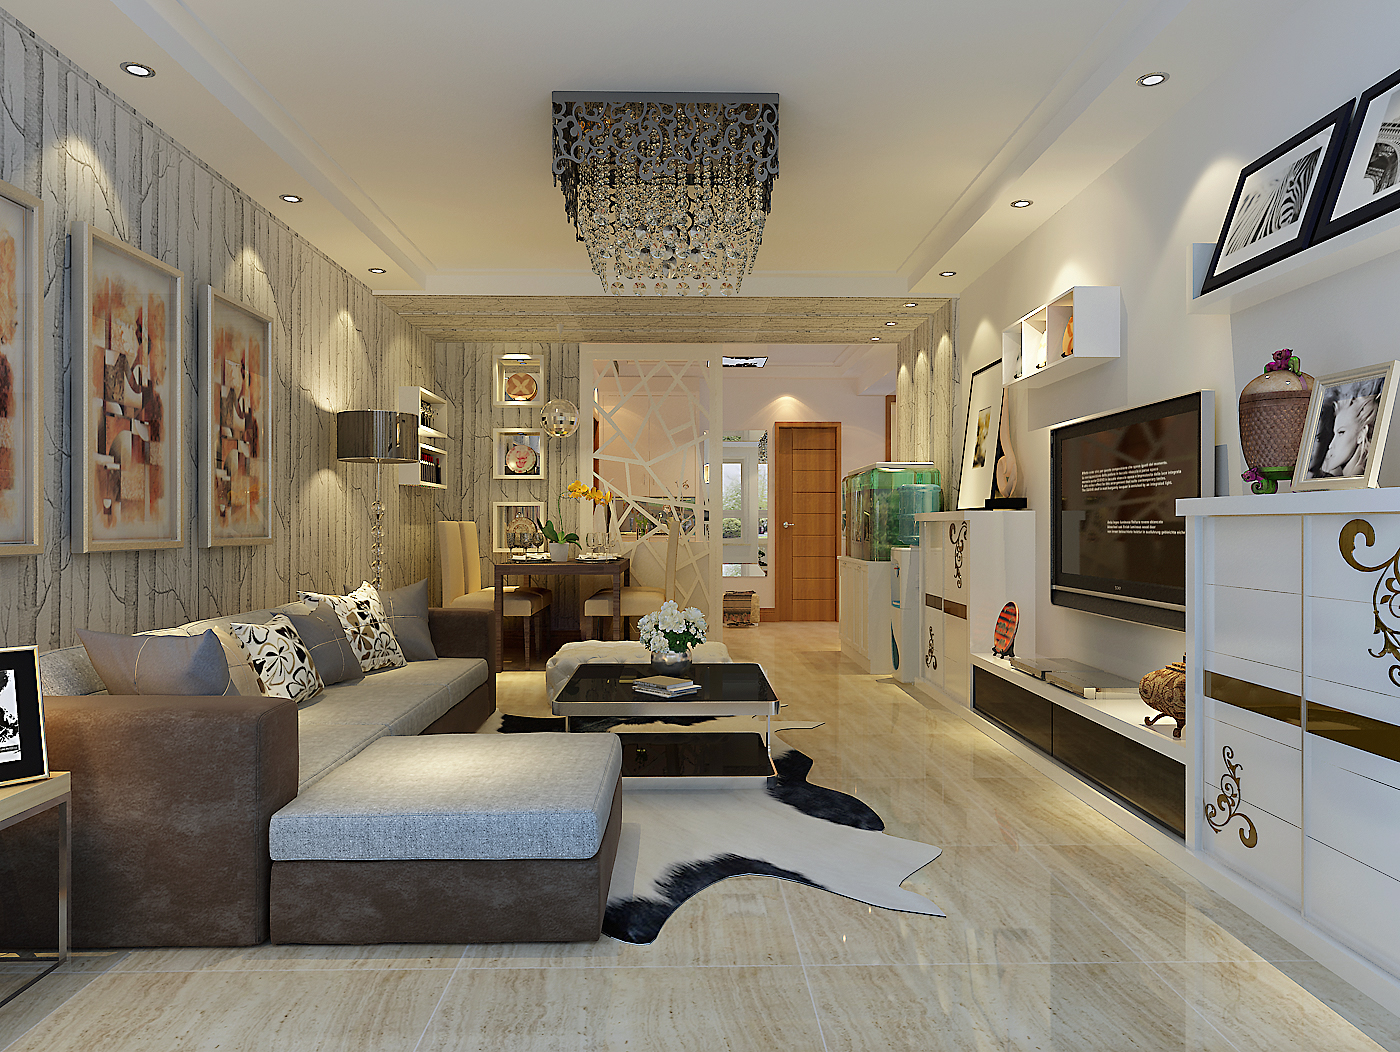 现代简约 三居 清新自然 温馨舒适 客厅图片来自上海实创-装修设计效果图在140平米清新自然的现代简约风格的分享